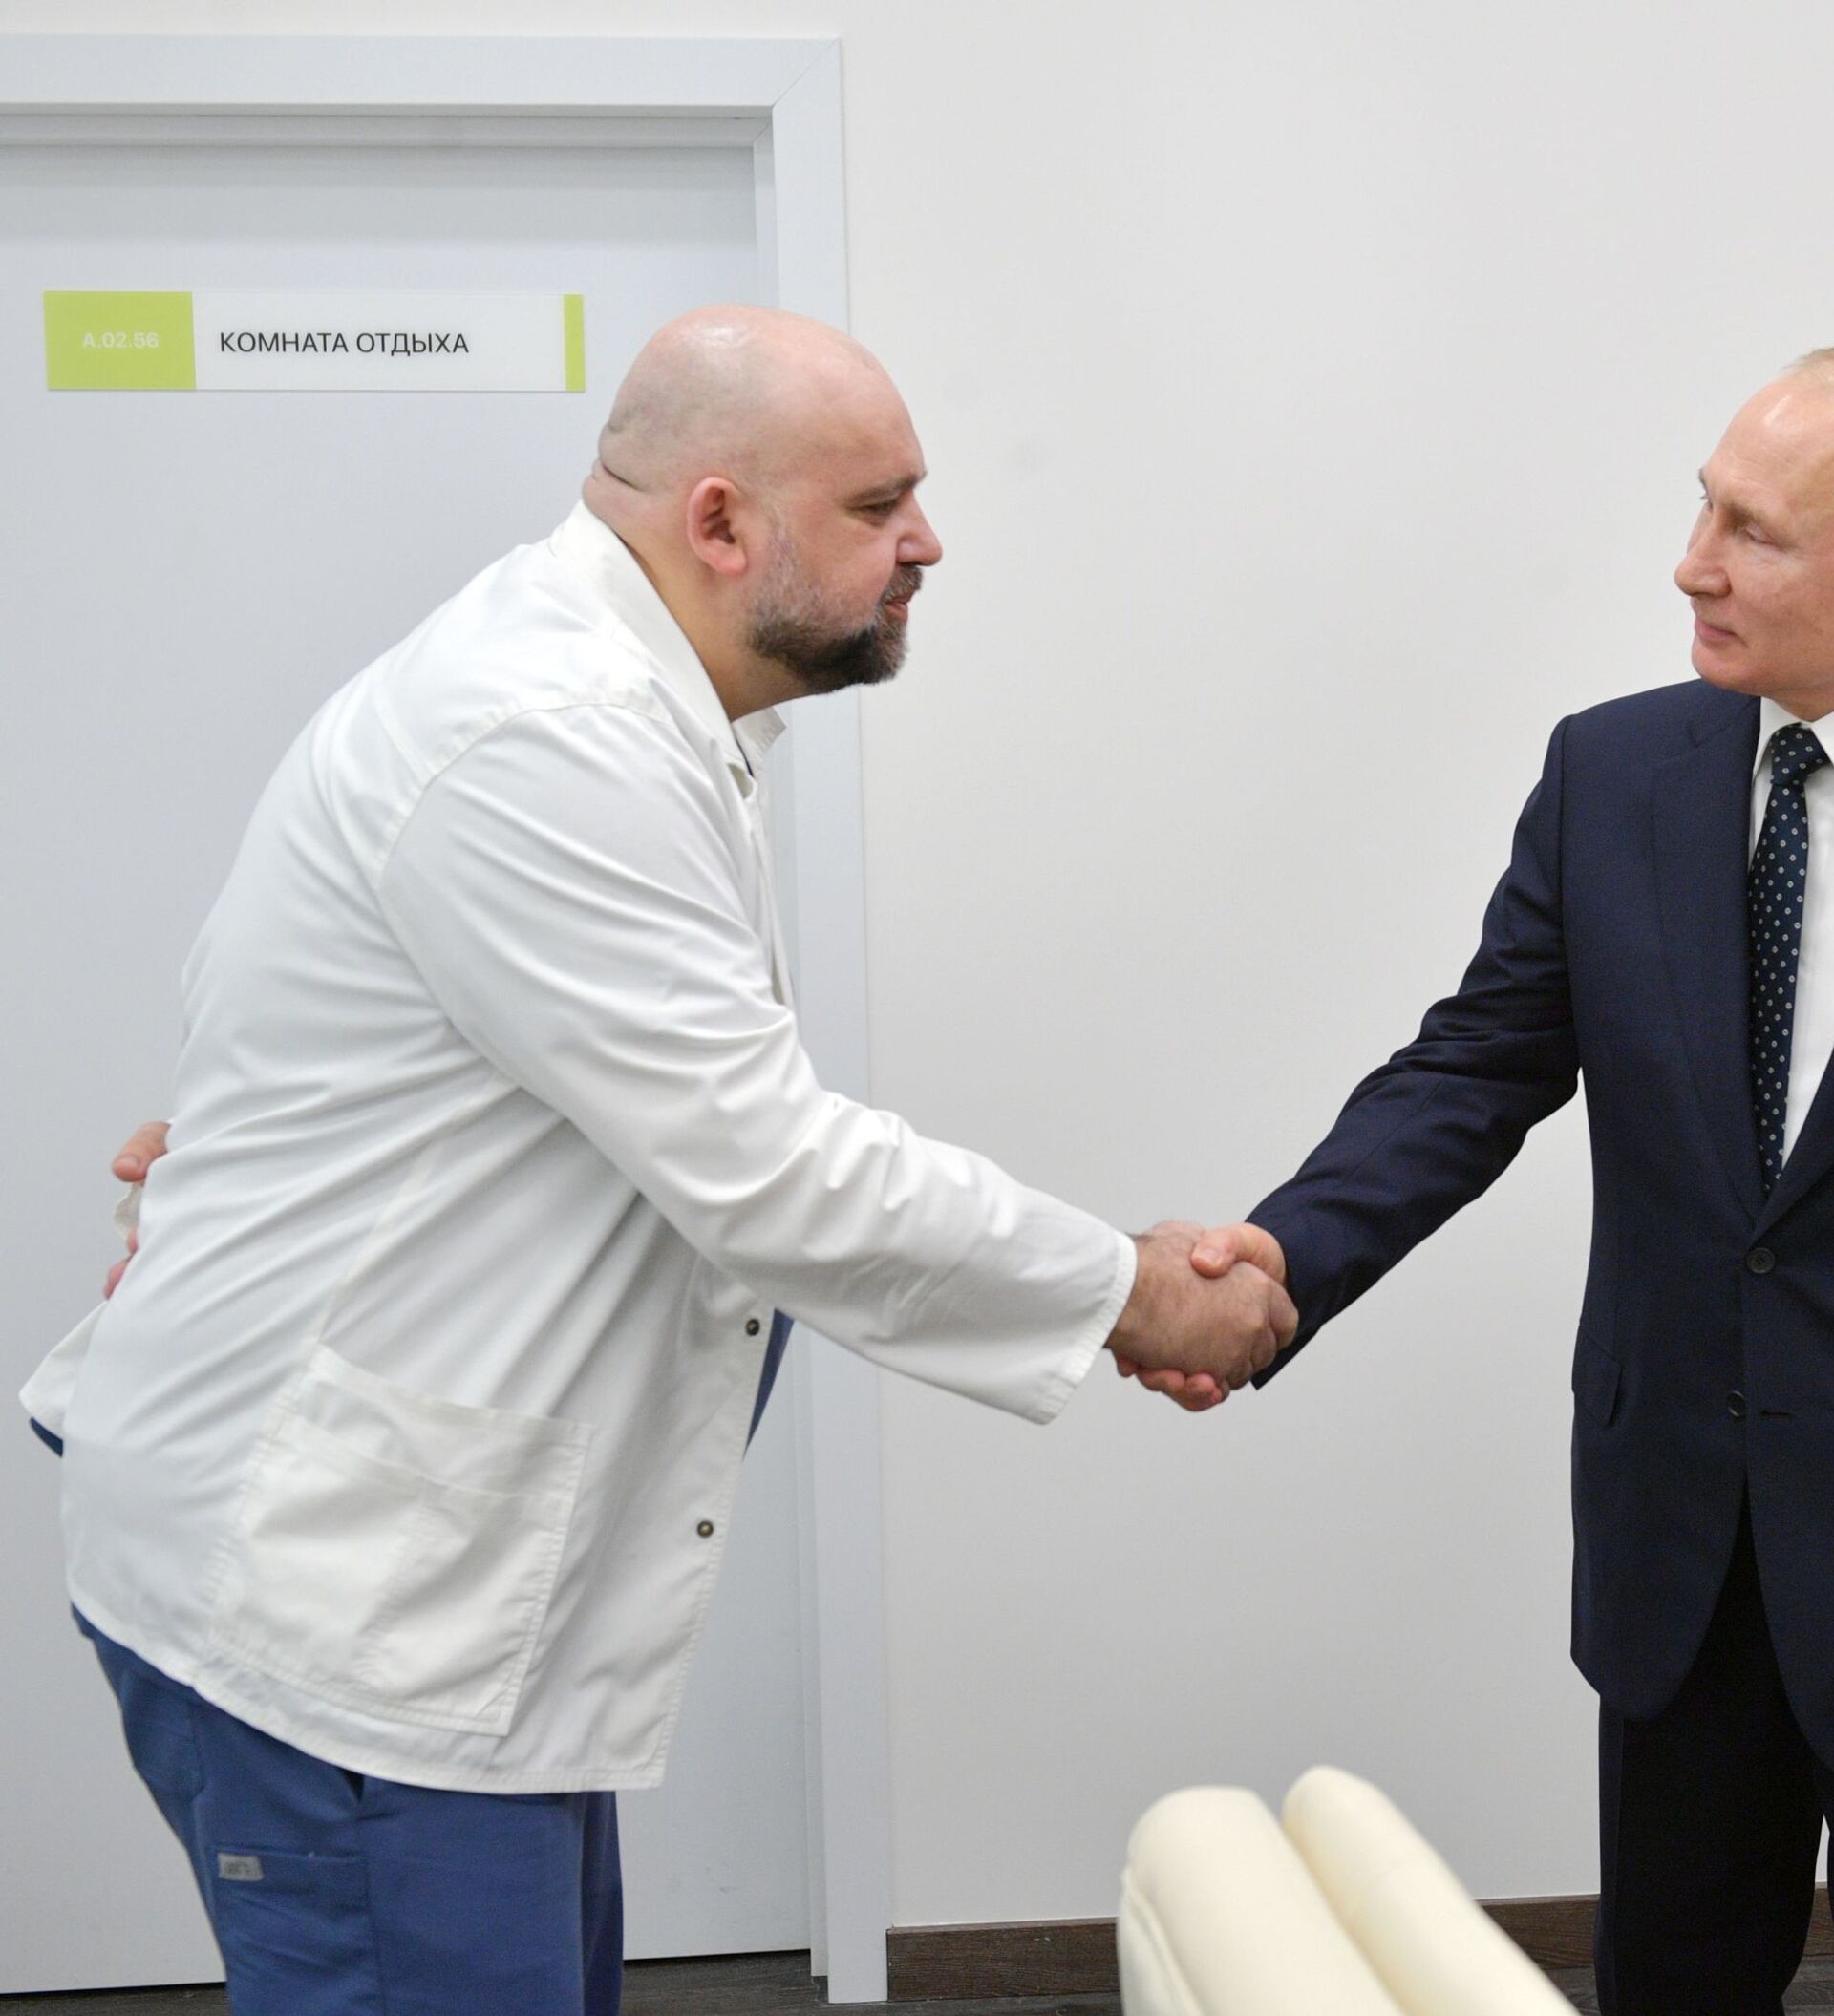 Путин в больнице в Коммунарке